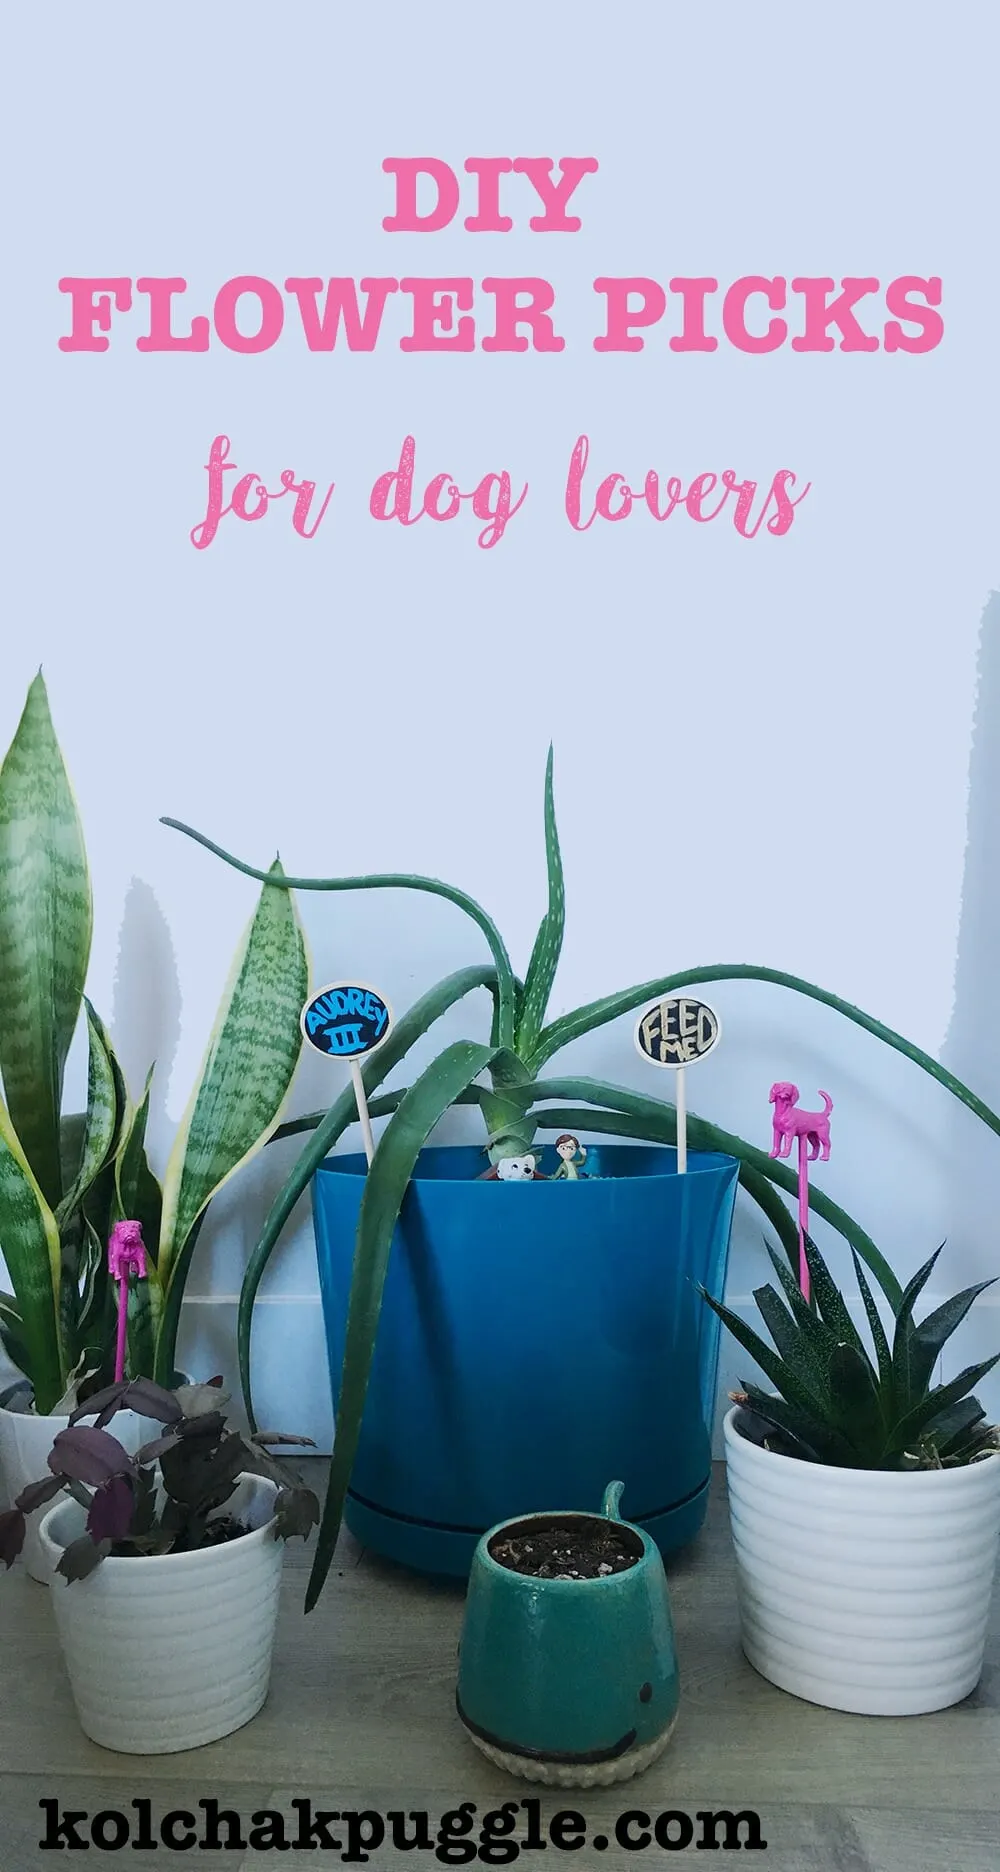 how to make custom flower picks  | Kol's Notes the DIY Dog